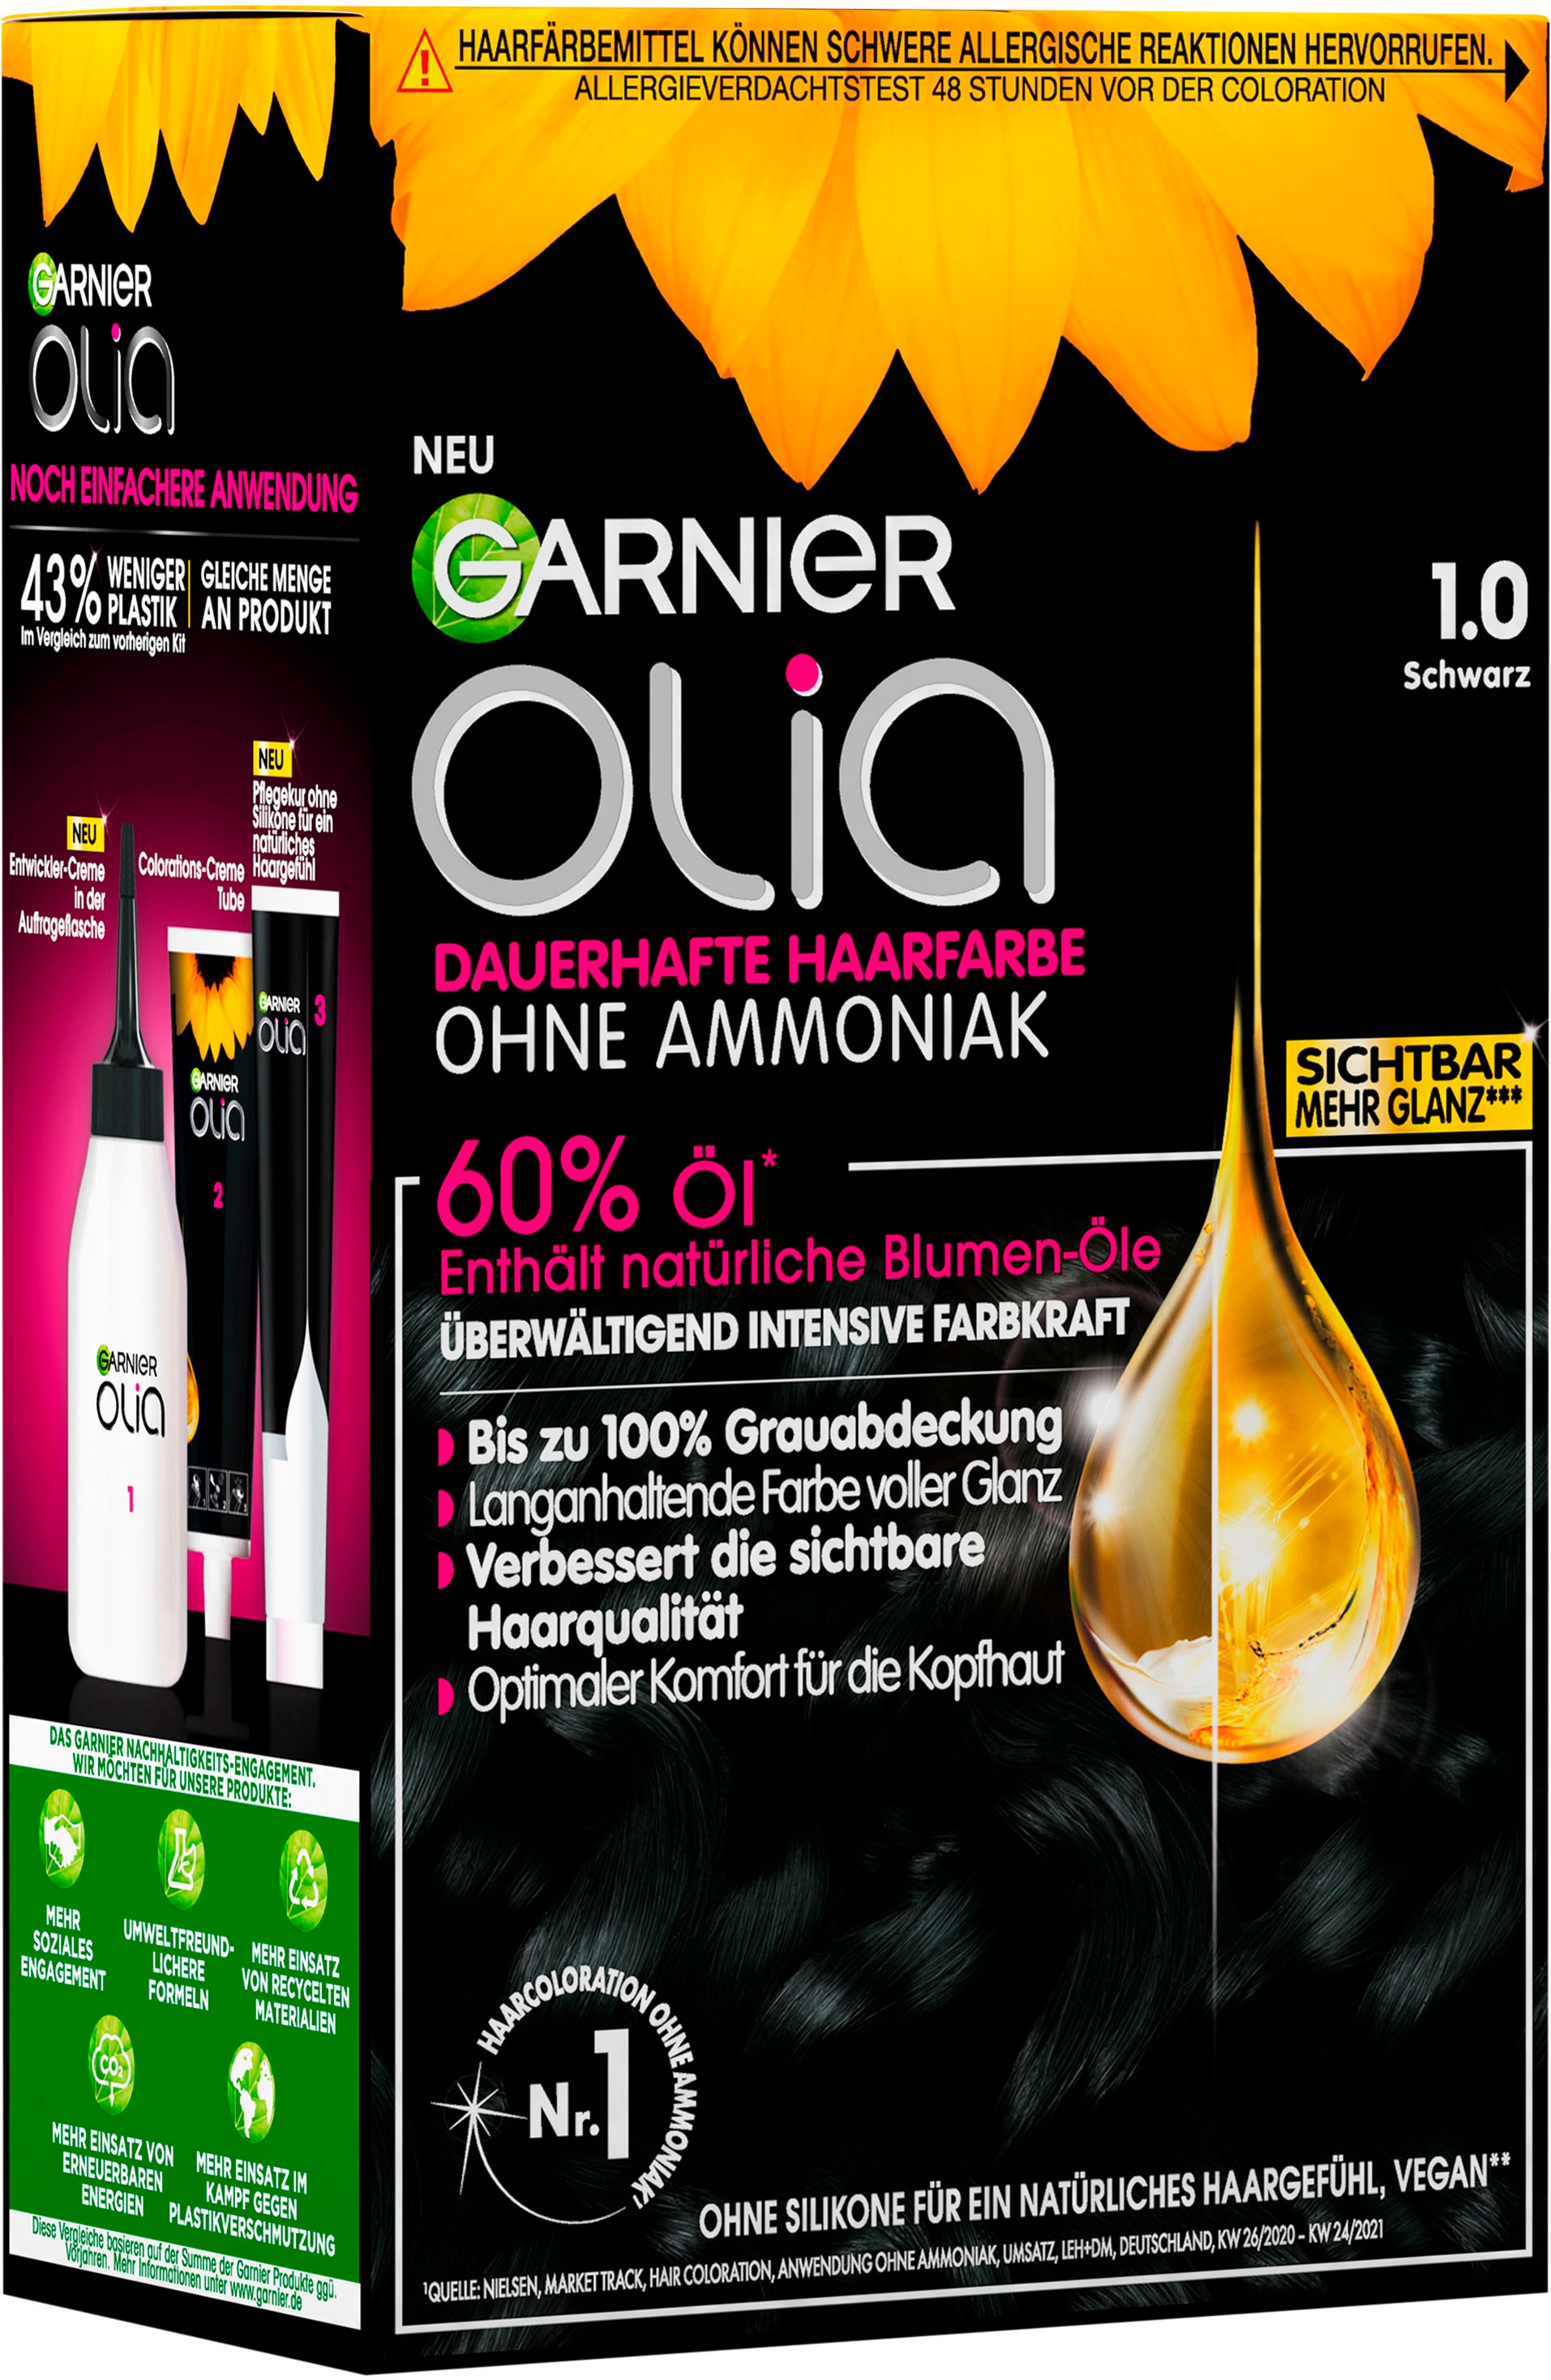 Haarfarbe«, GARNIER Olia Coloration Ölbasis dauerhafte »Garnier kaufen